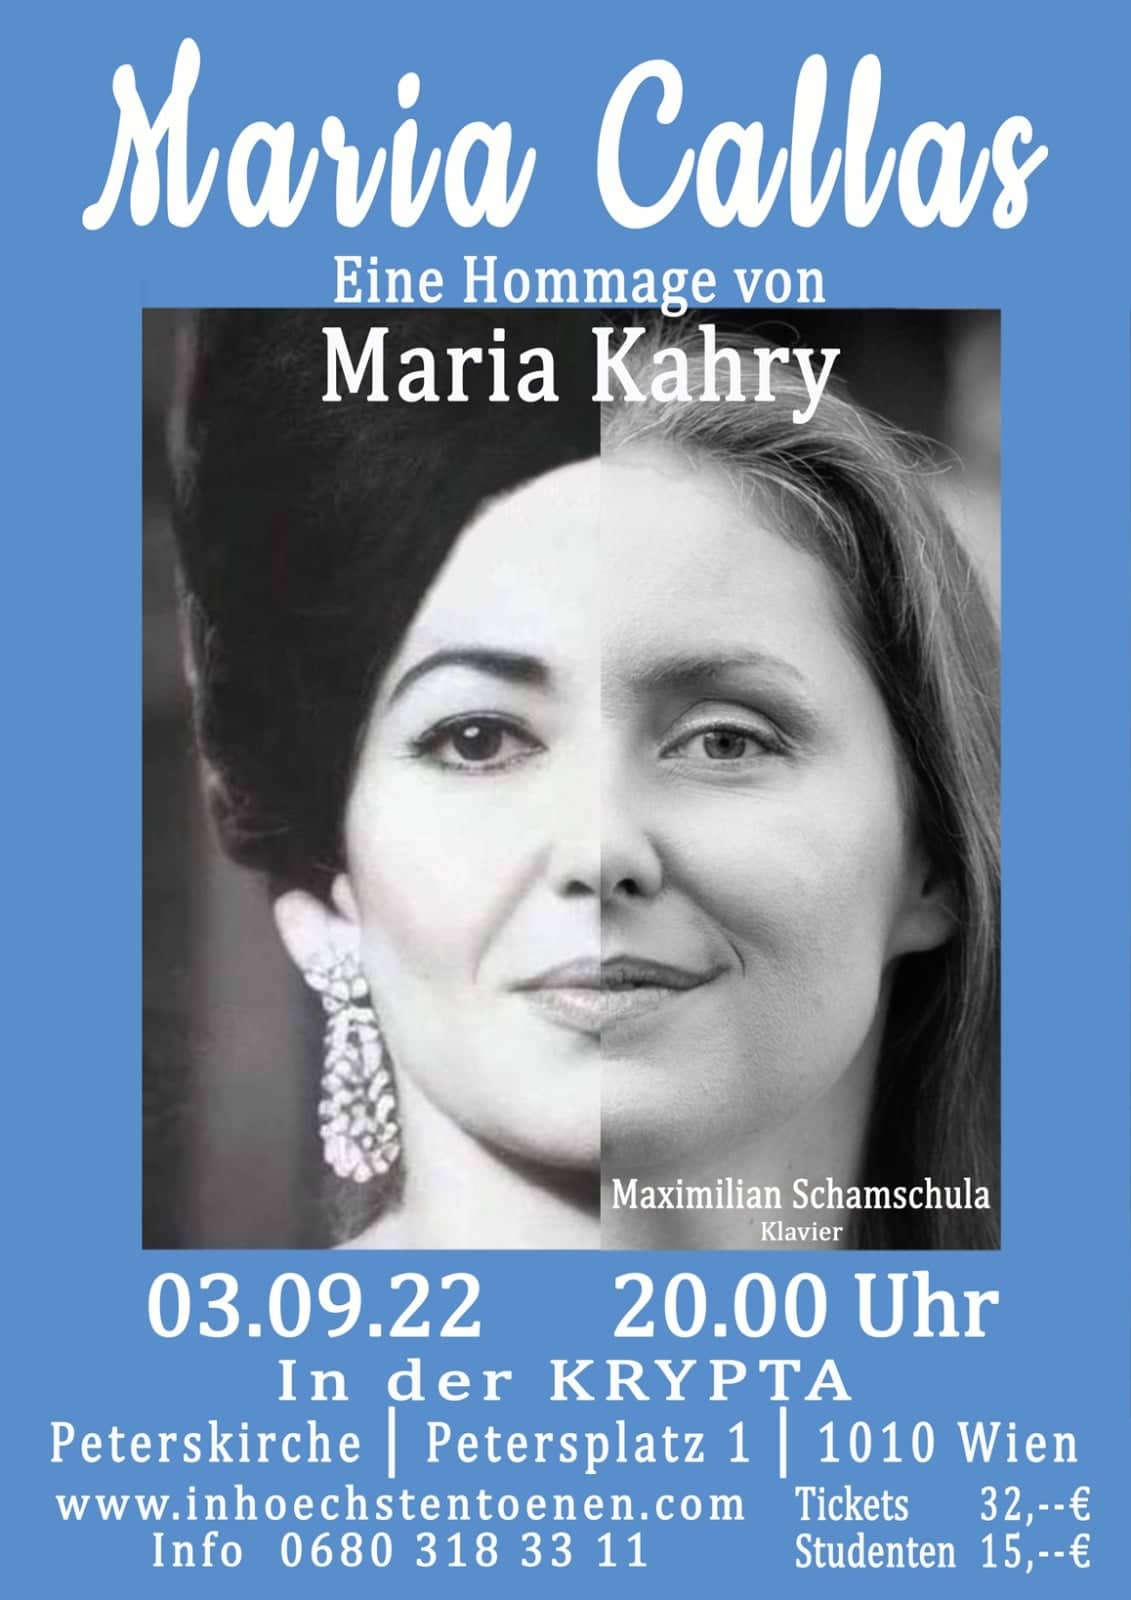 Maria Kahry